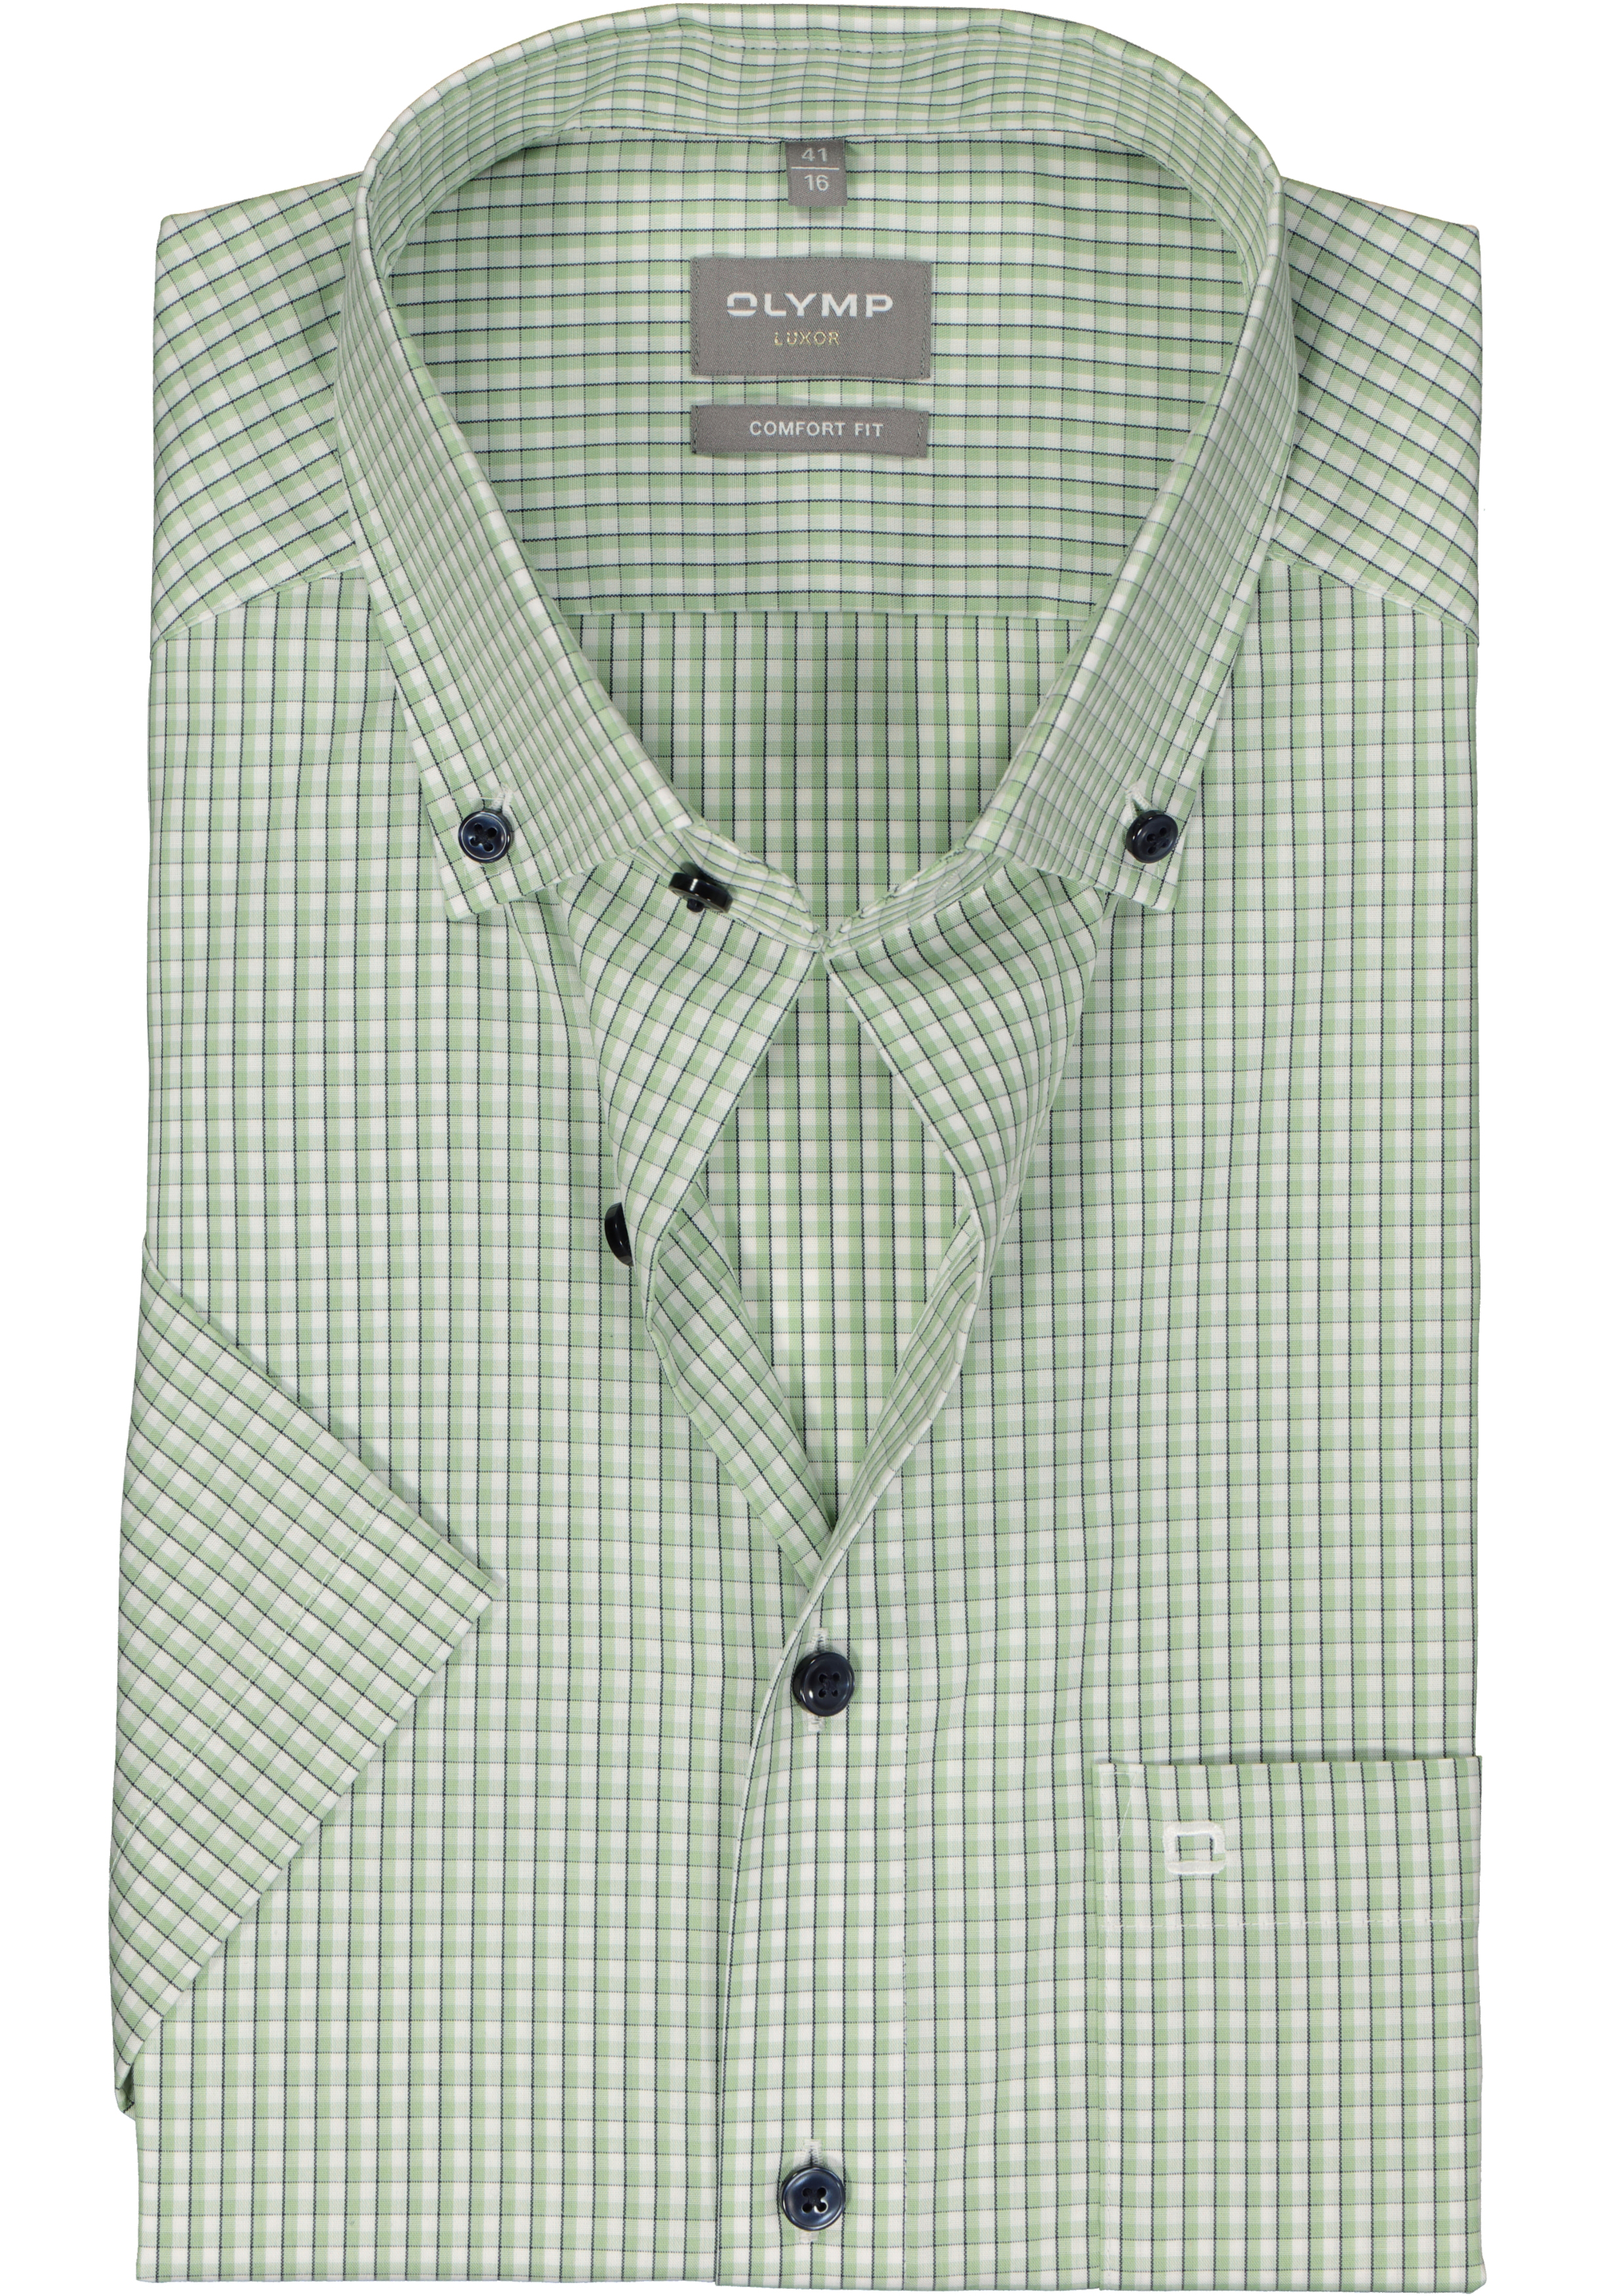 OLYMP comfort fit overhemd, korte mouw, popeline, wit met groen en blauw geruit